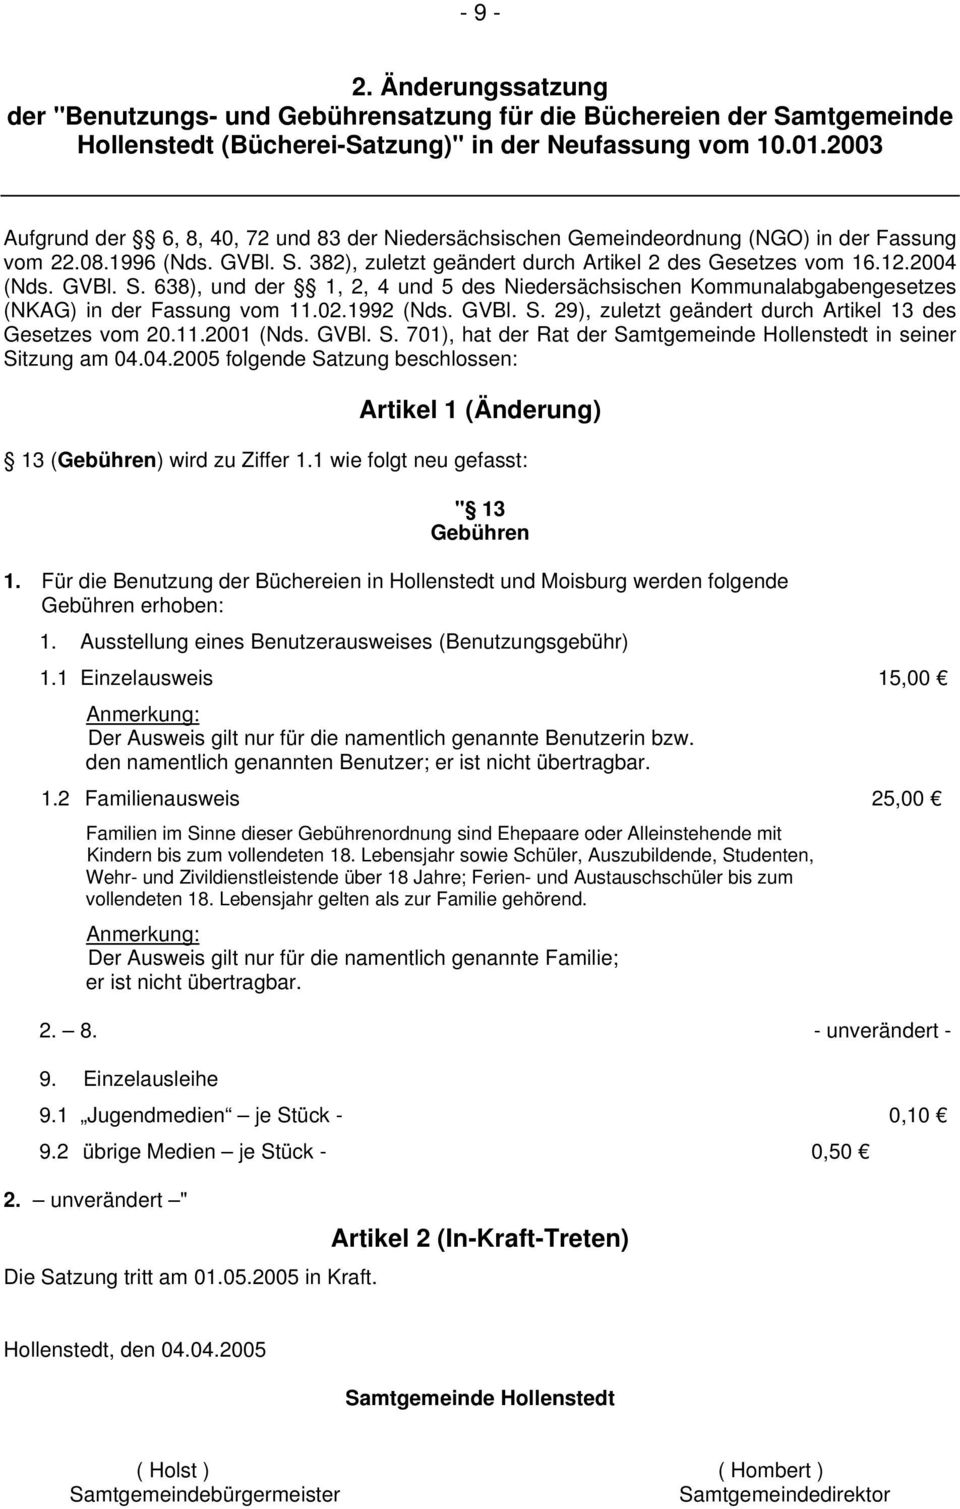 GVBl. S. 638), und der 1, 2, 4 und 5 des Niedersächsischen Kommunalabgabengesetzes (NKAG) in der Fassung vom 11.02.1992 (Nds. GVBl. S. 29), zuletzt geändert durch Artikel 13 des Gesetzes vom 20.11.2001 (Nds.